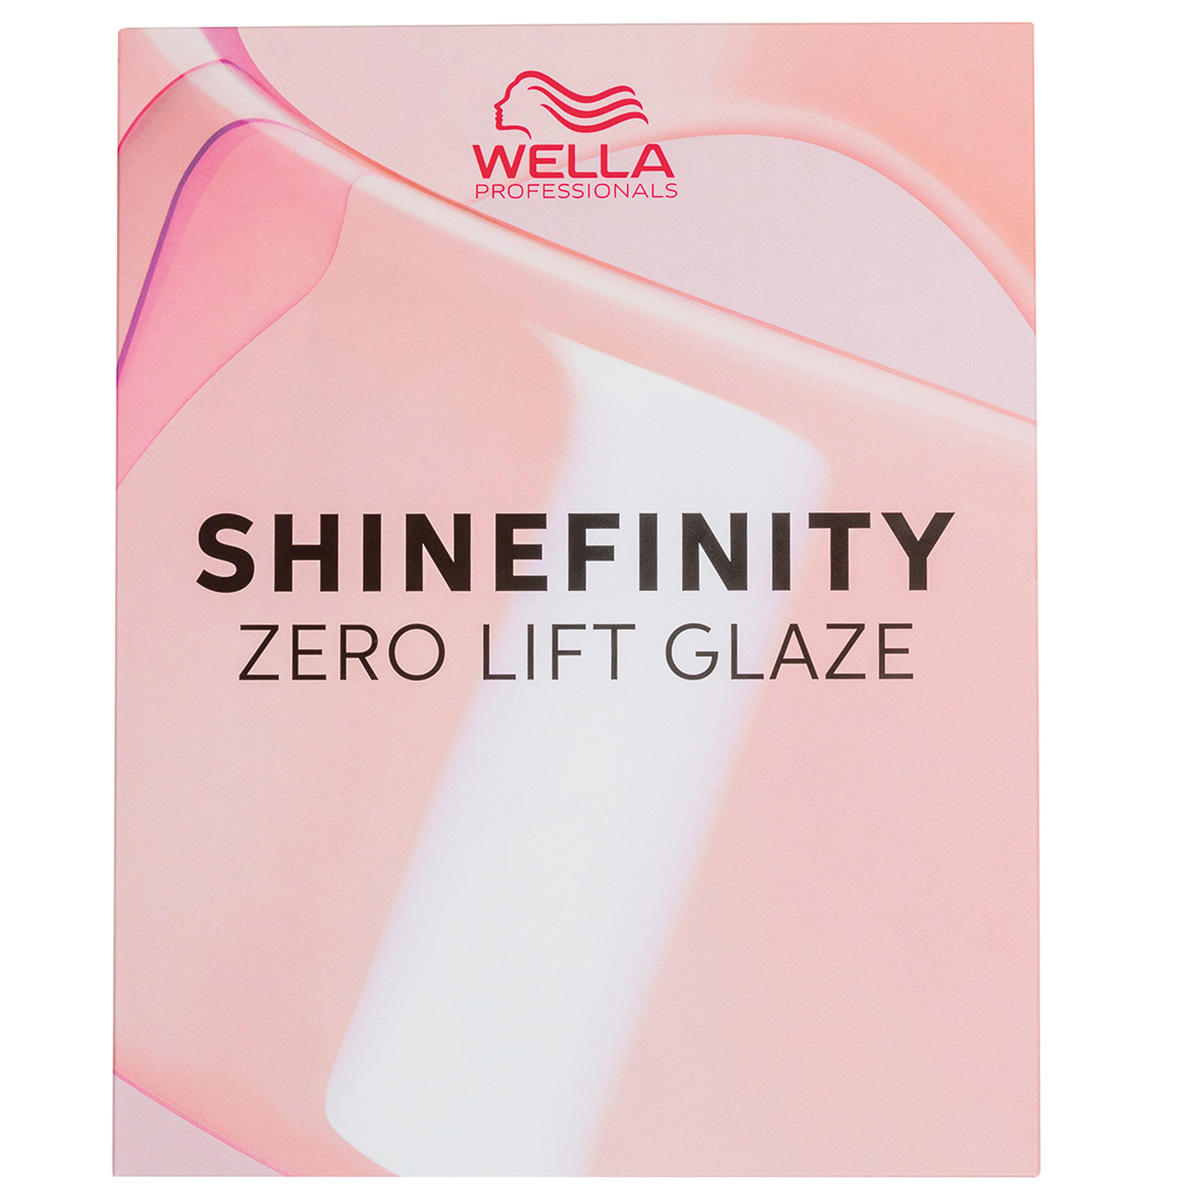 Wella Shinefinity Carta de colores  - 1